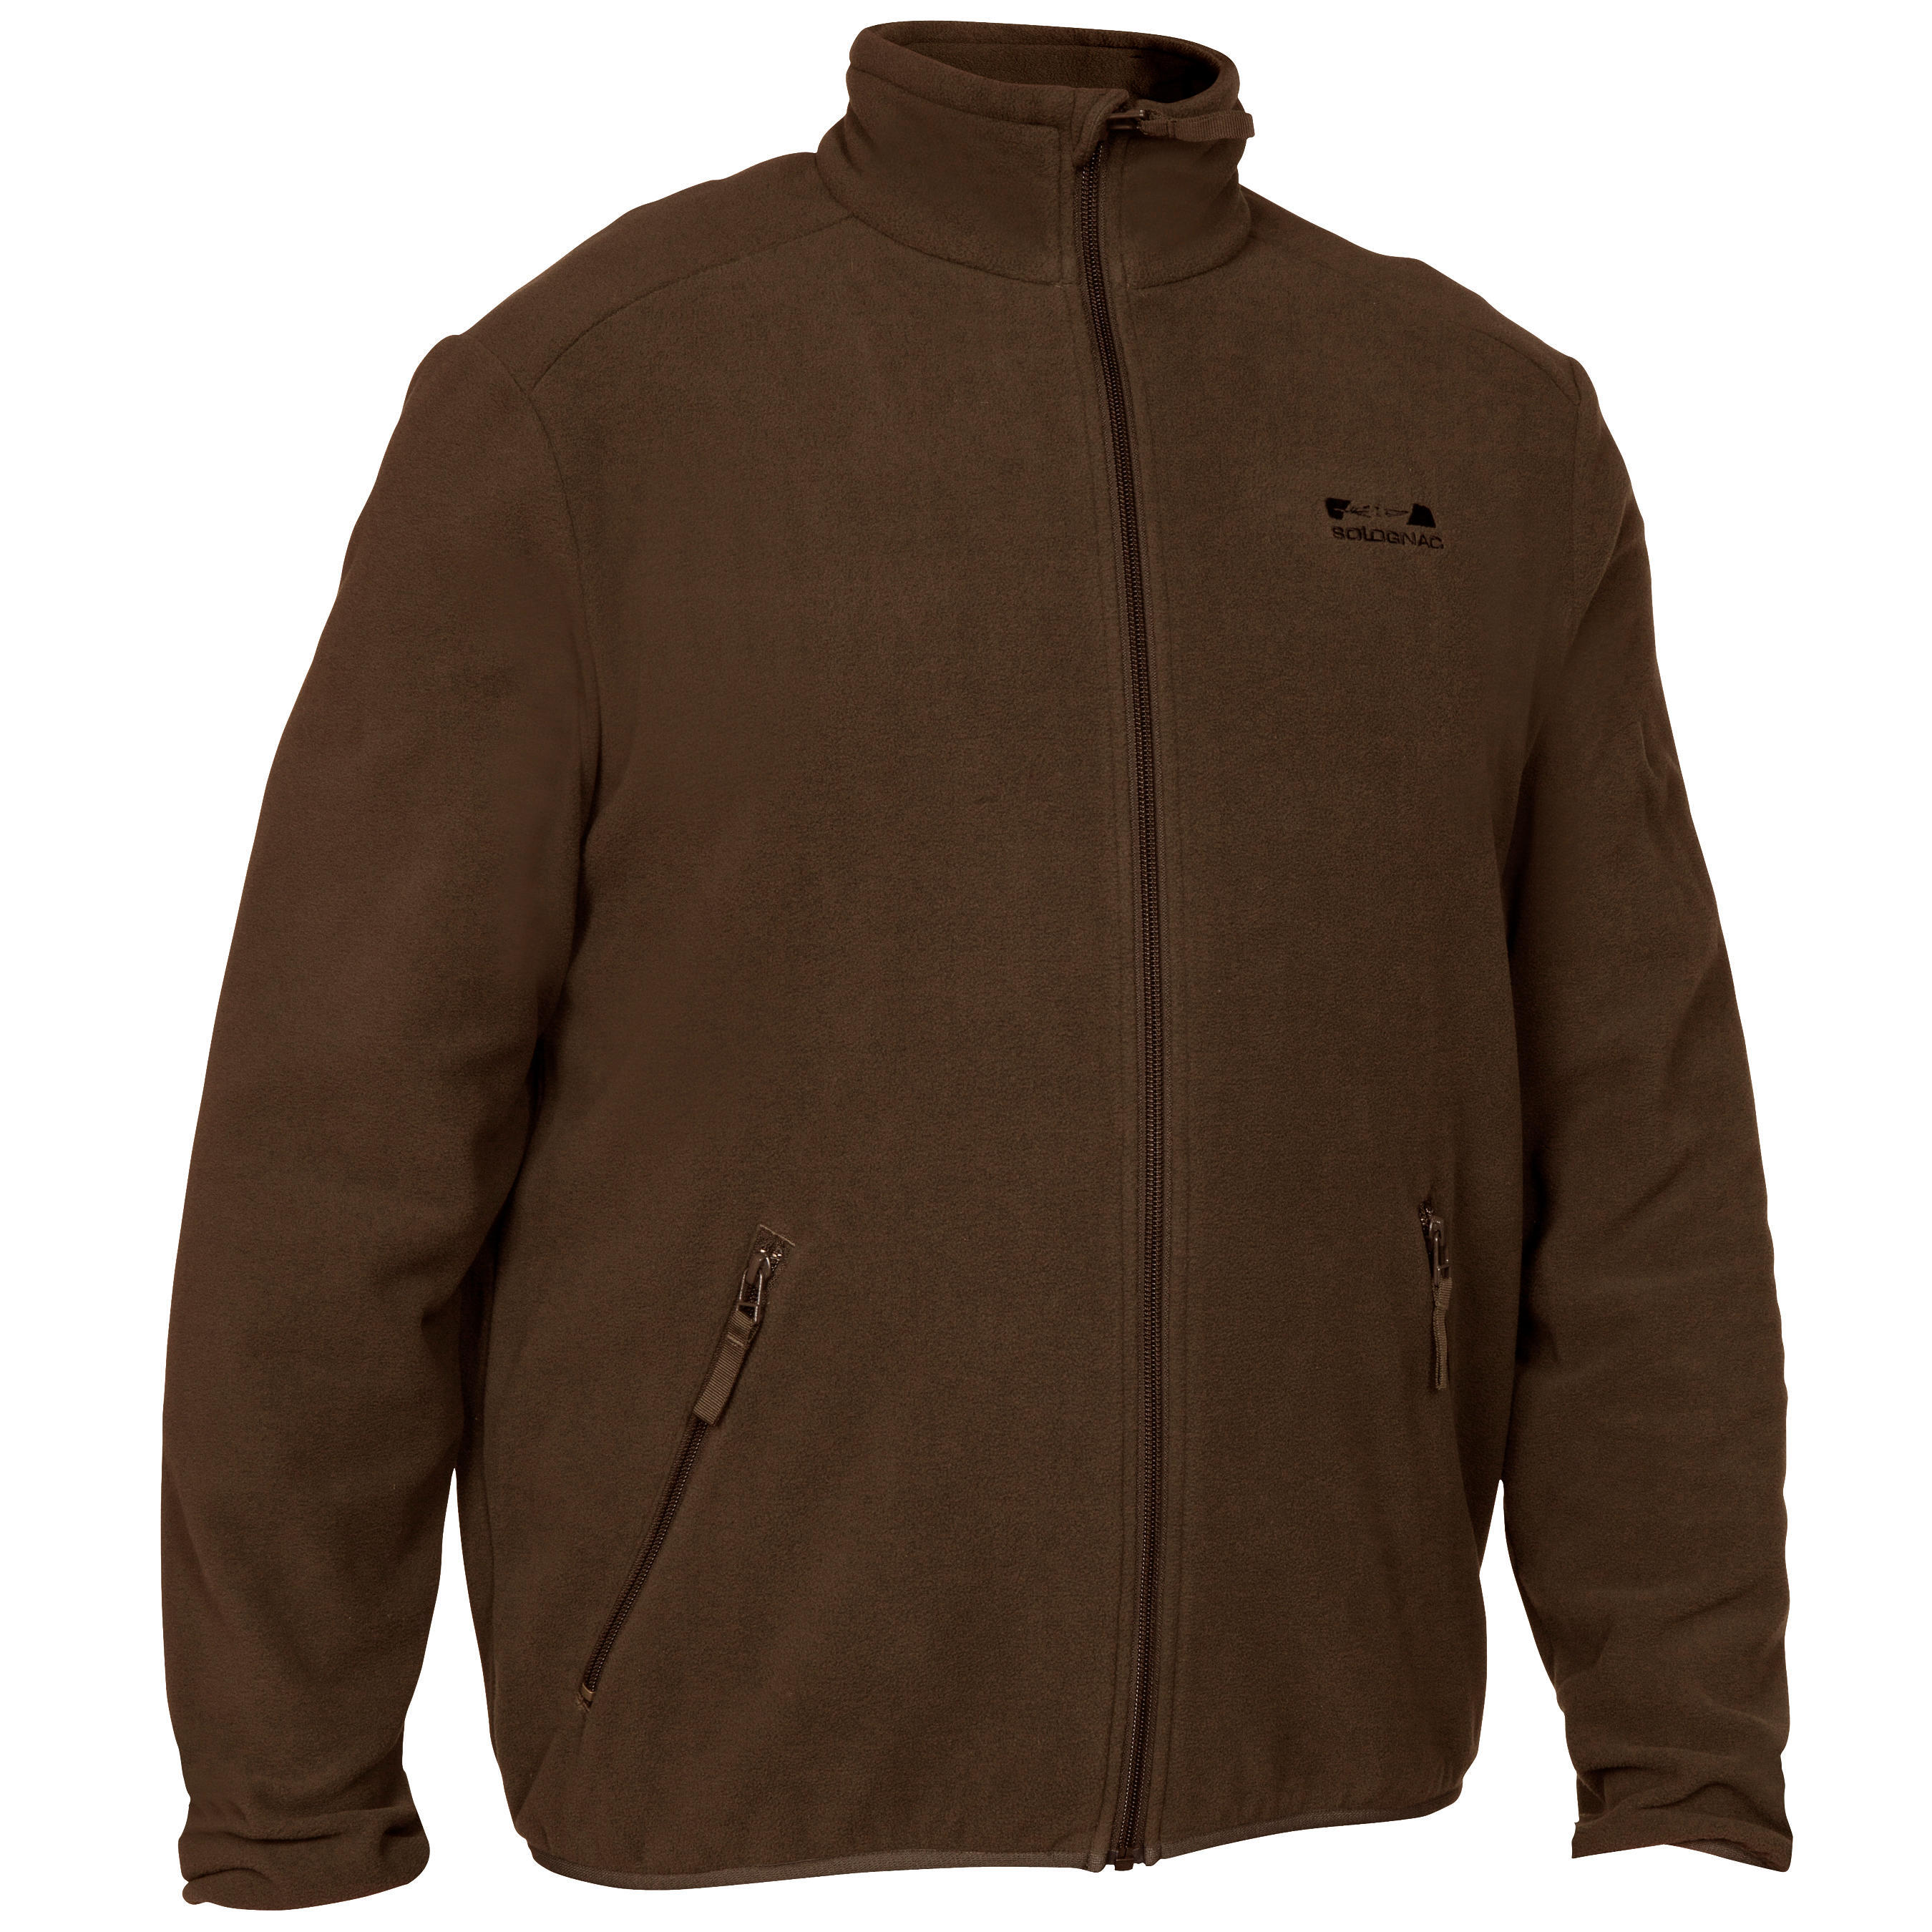 Охотничья куртка 100 флисовая куртка коричневая SOLOGNAC, кофе коричневый